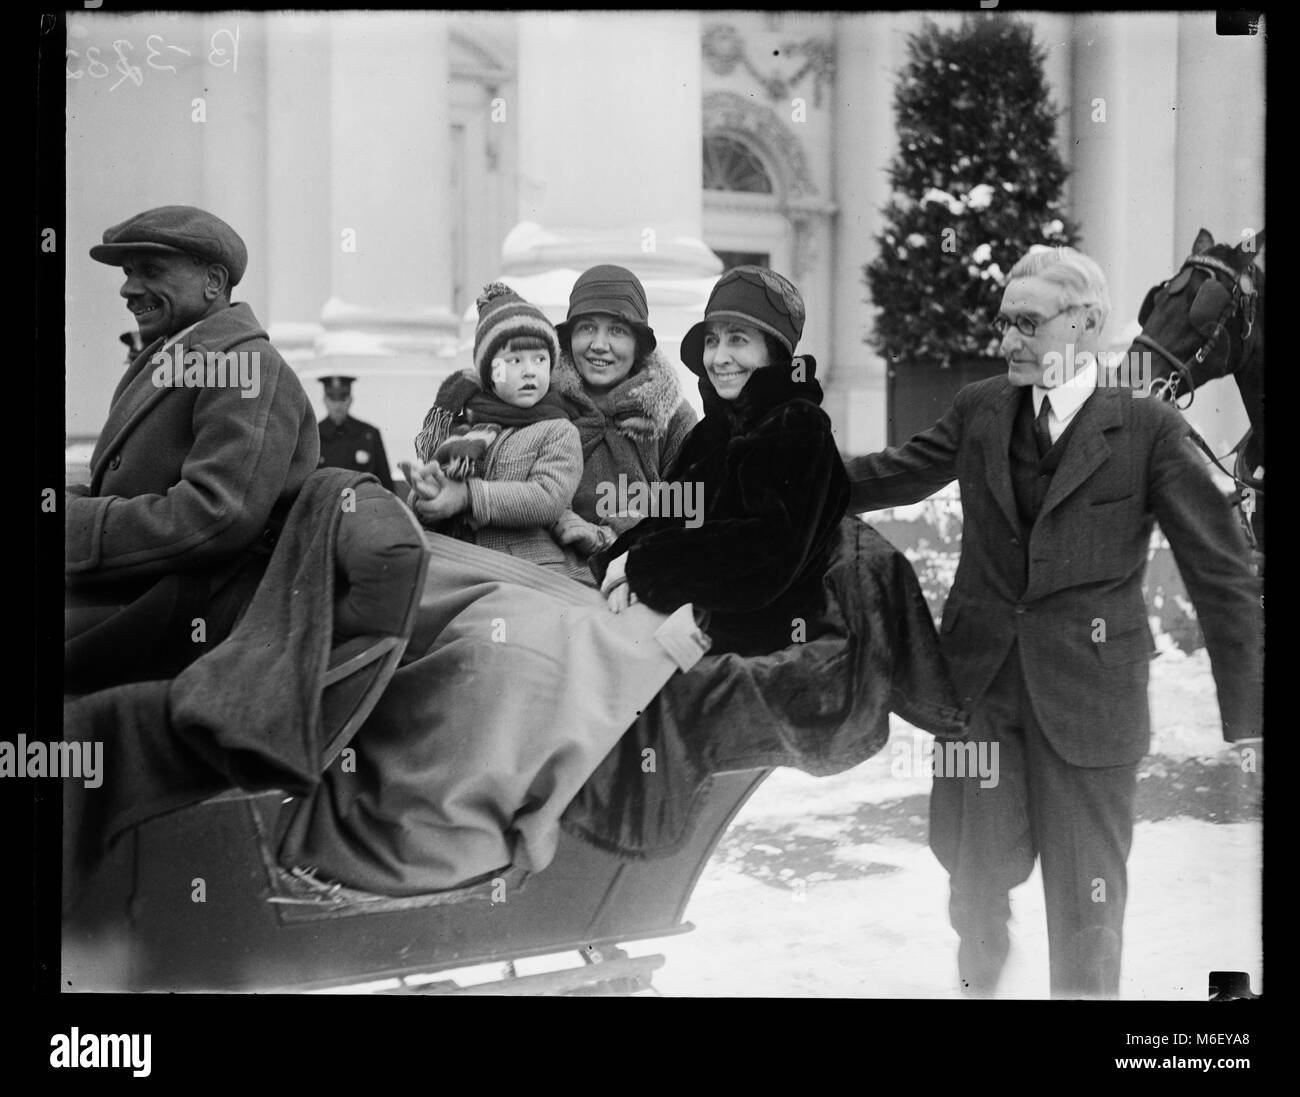 First Lady Grace Coolidge (Mitte), von Chief White House Usher Ike Hoover sitzt (rechts), genießt eine Schlittenfahrt am Weißen Haus Grundstück mit nicht identifizierte Frau, Kind und Treiber, Washington, DC, 1929. Stockfoto